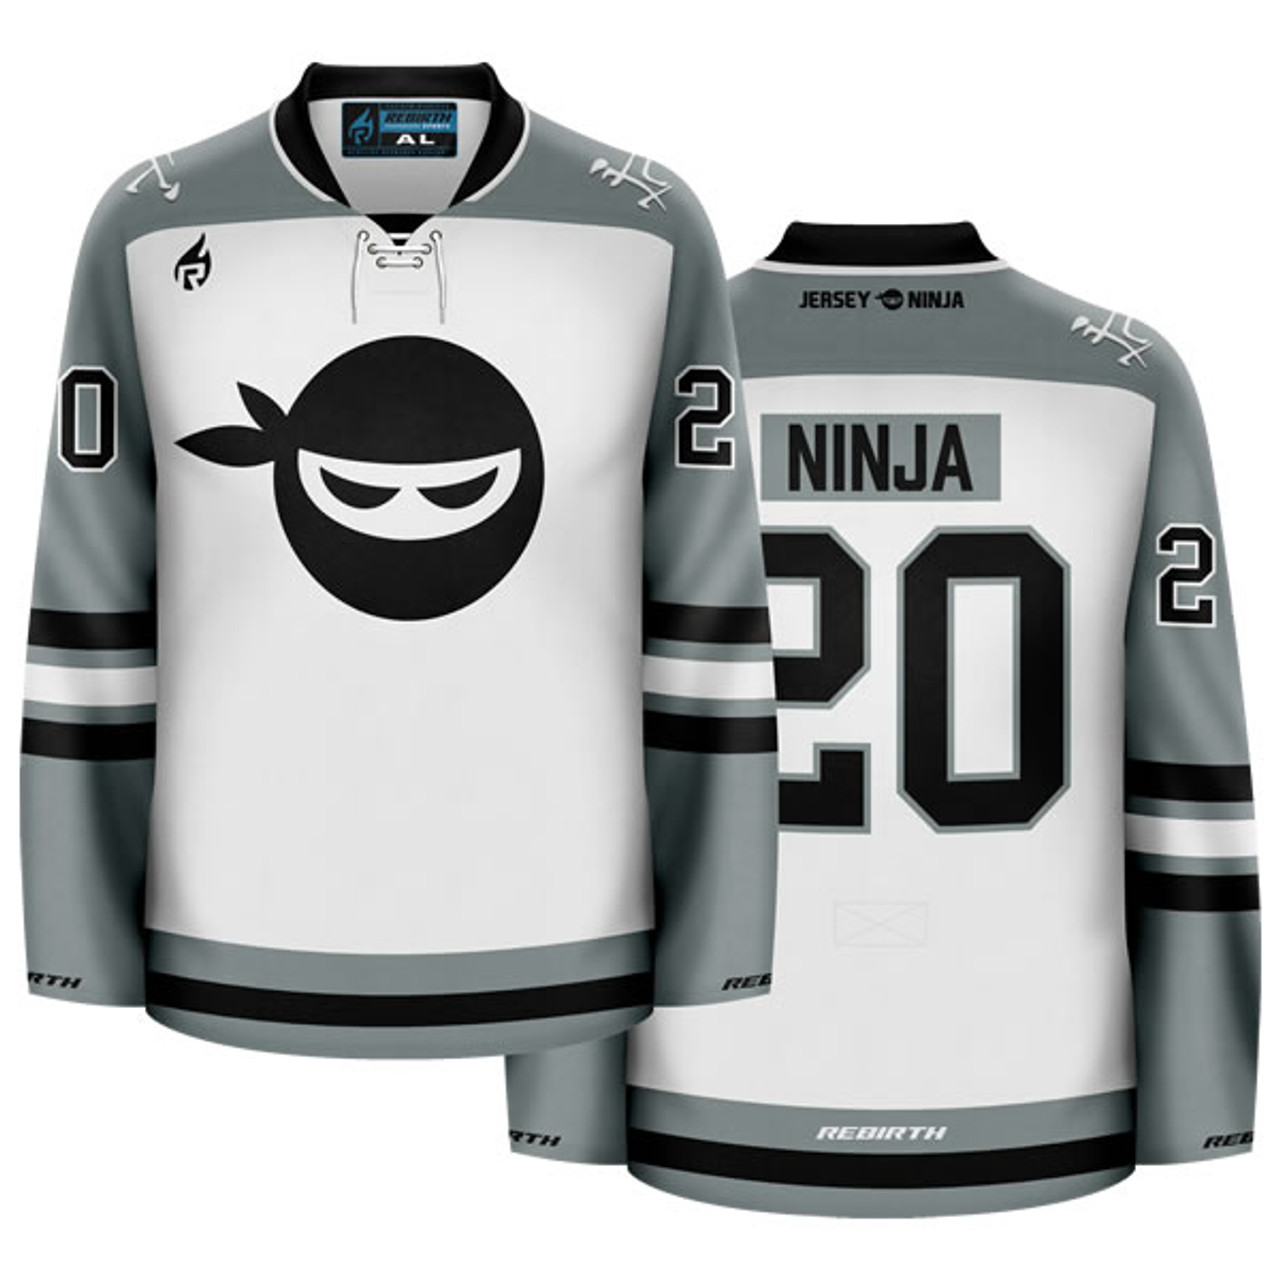 Jersey Ninja - Seattle Seahawks Blue Hockey Jersey